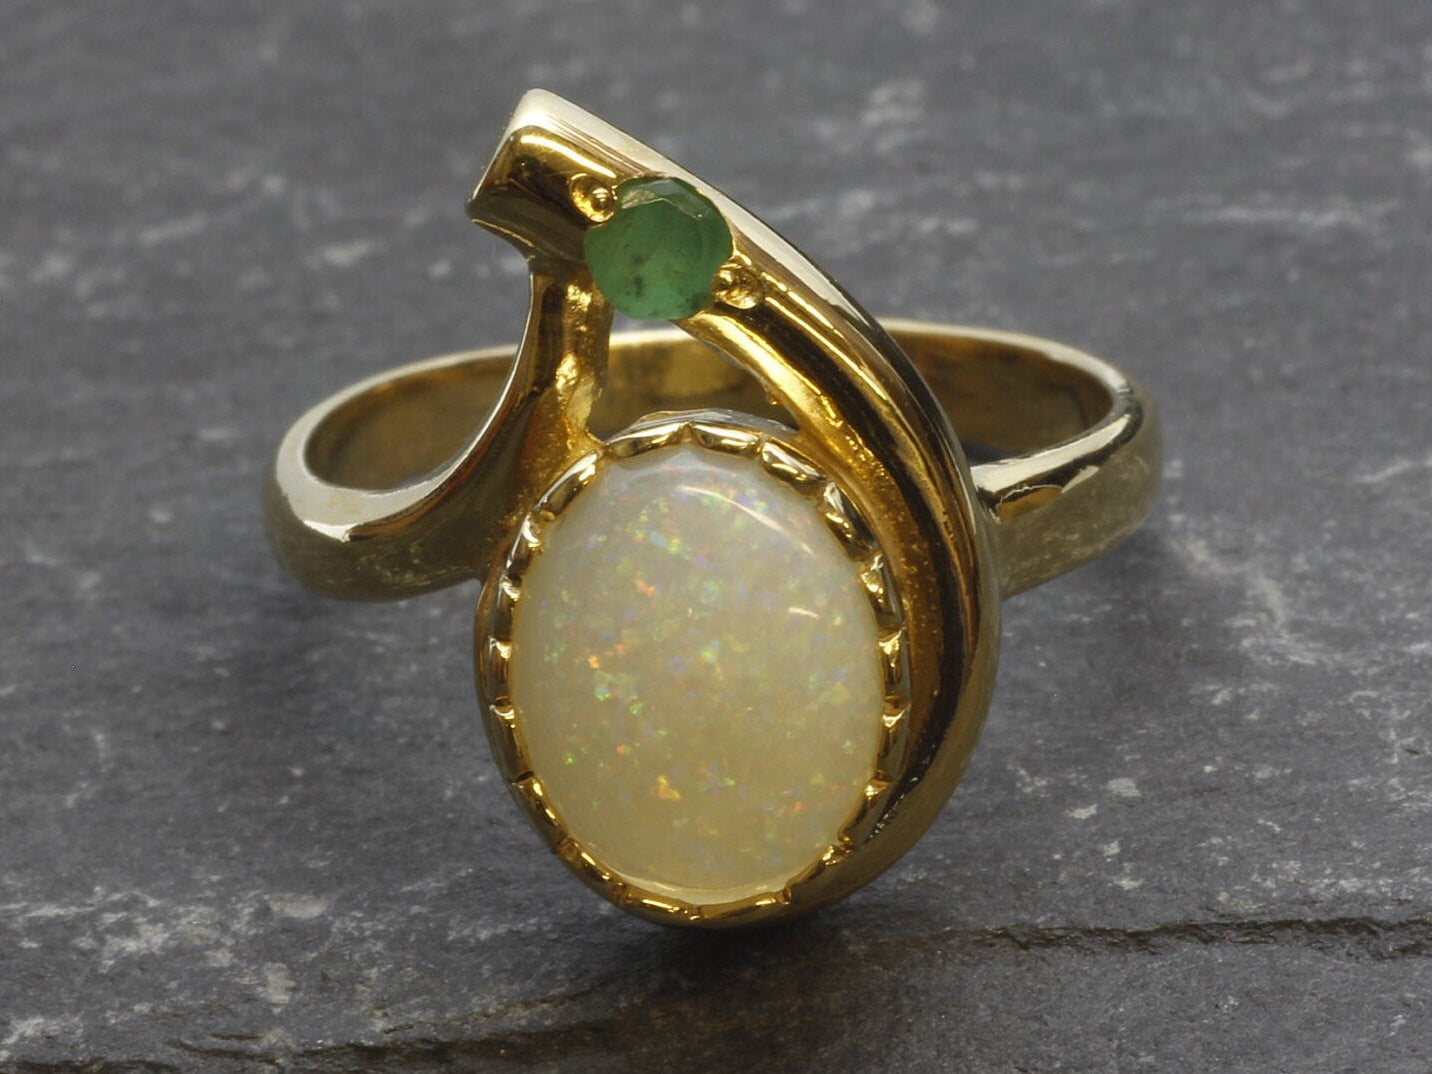 Gold Australian Opal Ring in Teardrop Shape with Small Emerald